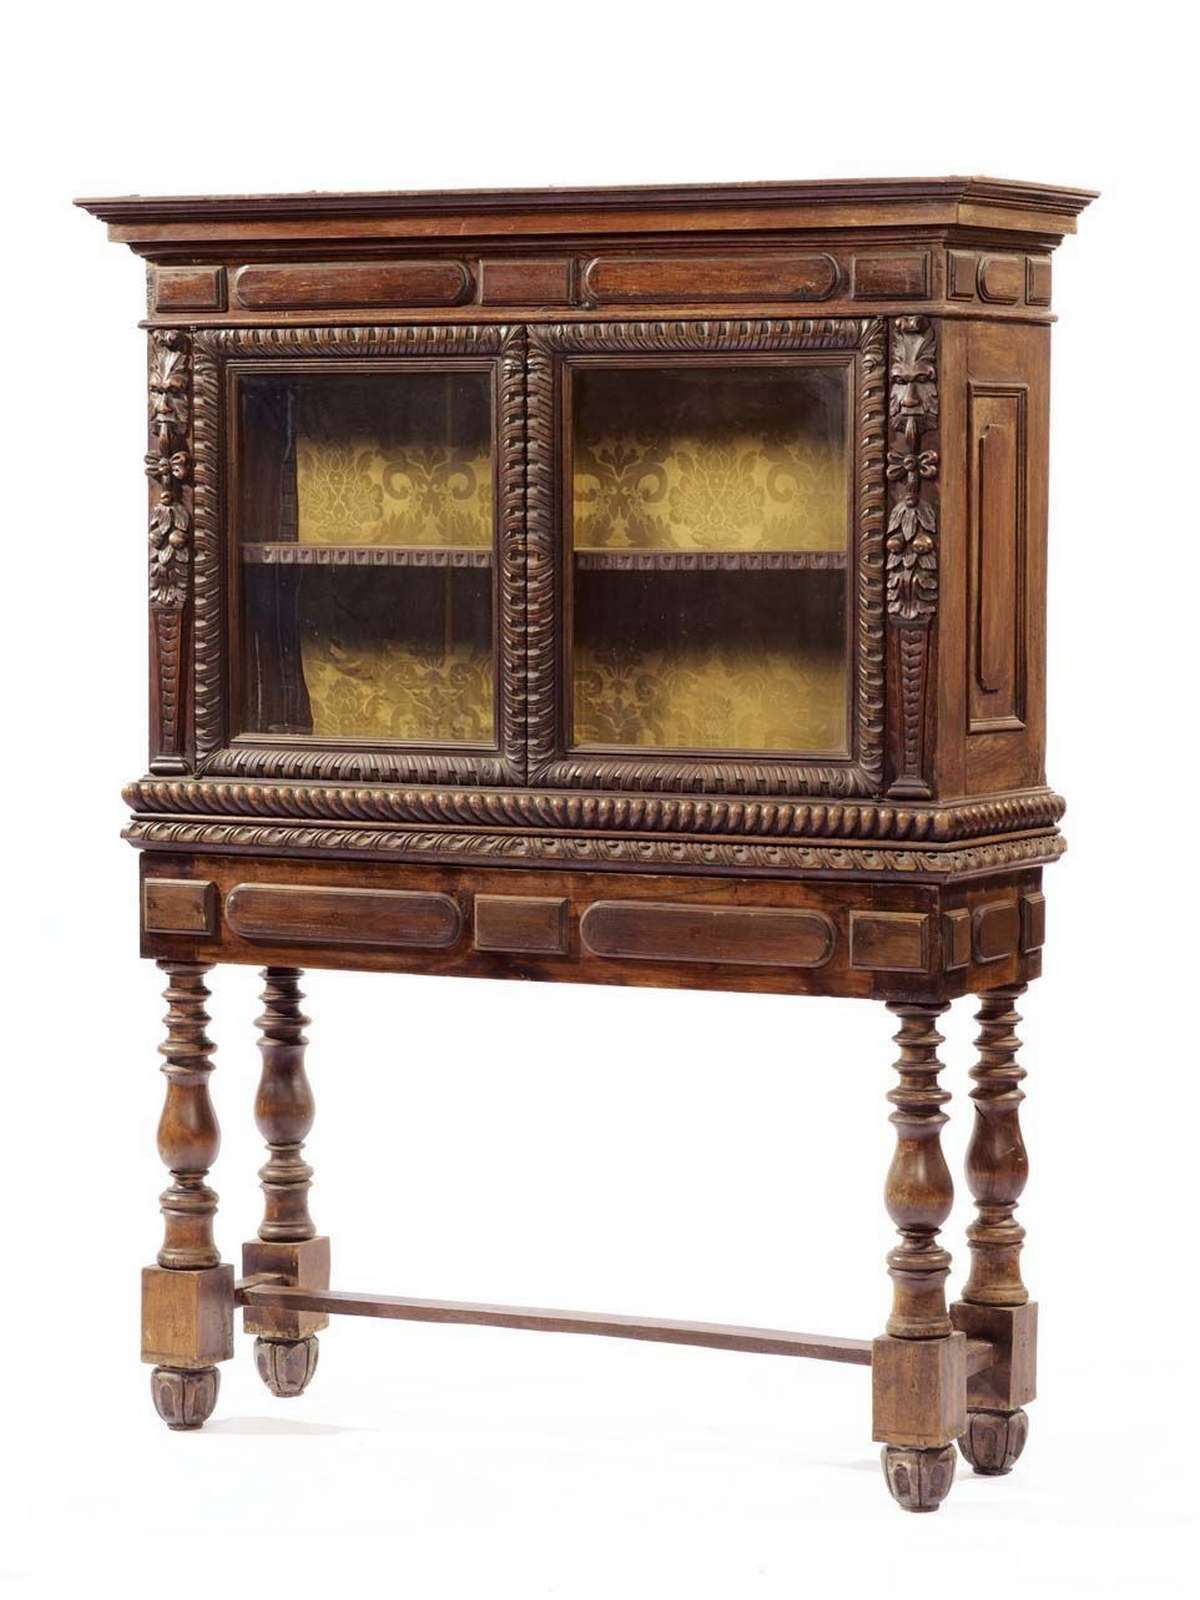 Cabinet in legno - Secretaire - Mobili antichi - Prodotti - Antichità Fiorillo